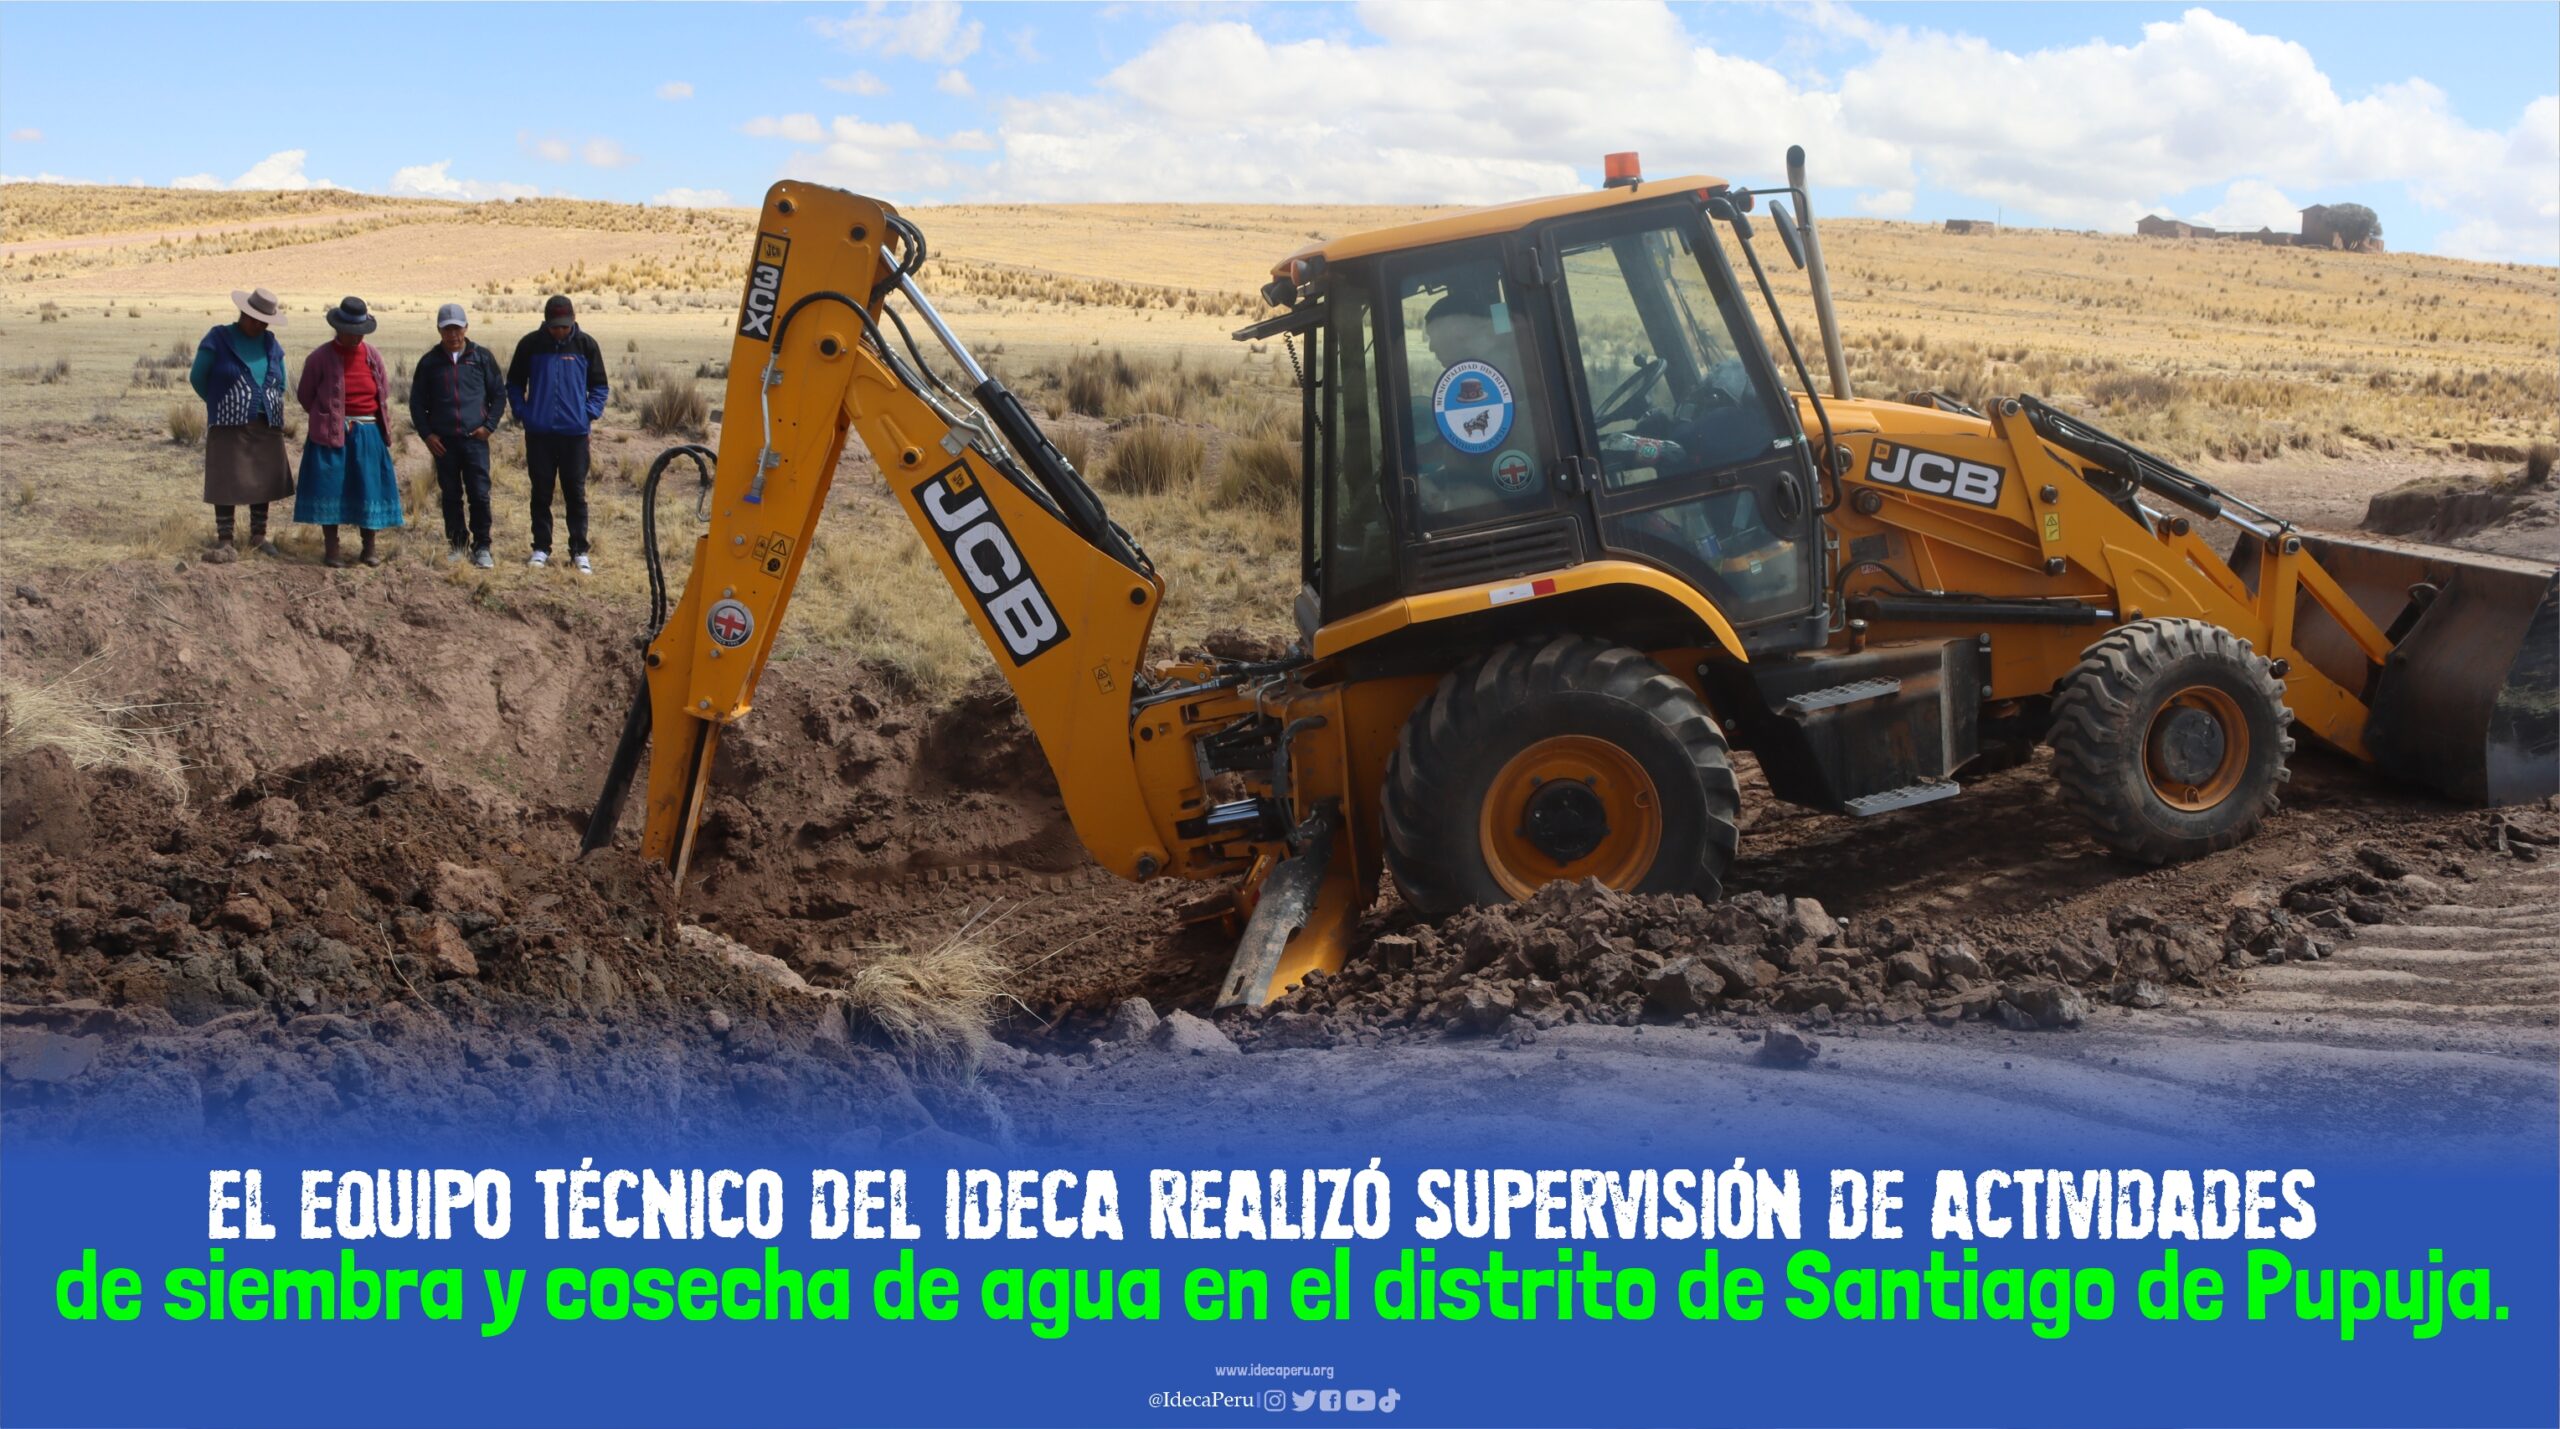 El Equipo técnico del IDECA realizó supervisión de actividades de siembra y cosecha de agua en el distrito de Santiago de Pupuja.